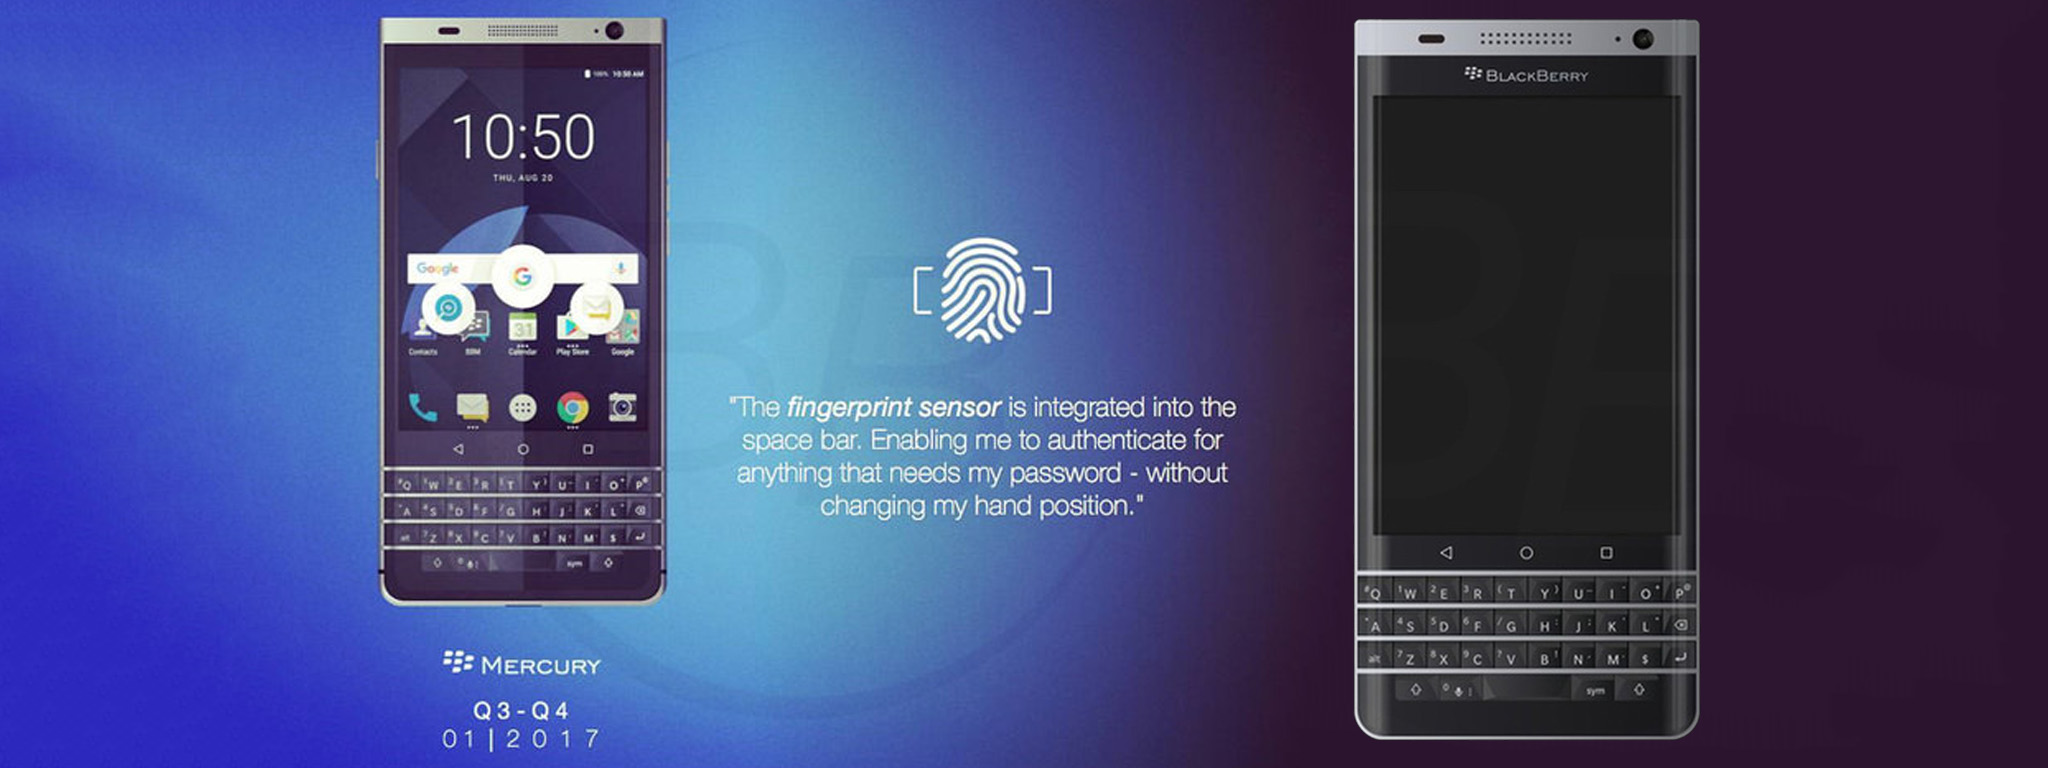 BlackBerry Mercury (DTEK70) bị lộ ảnh dựng và ảnh thực tế